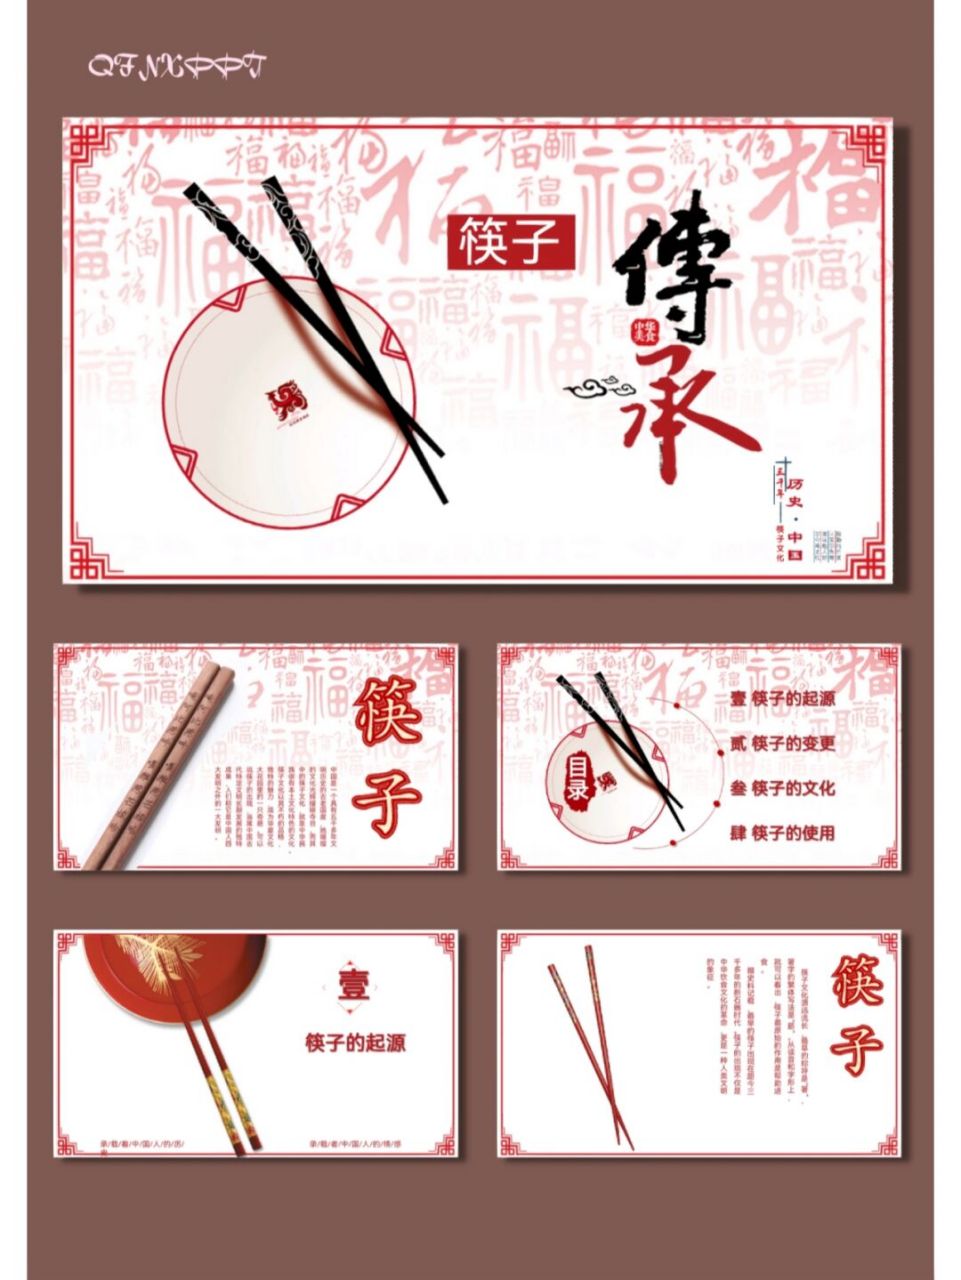 筷子中国传统文化饮食文化ppt模板【555】 96共21页,可编辑修改